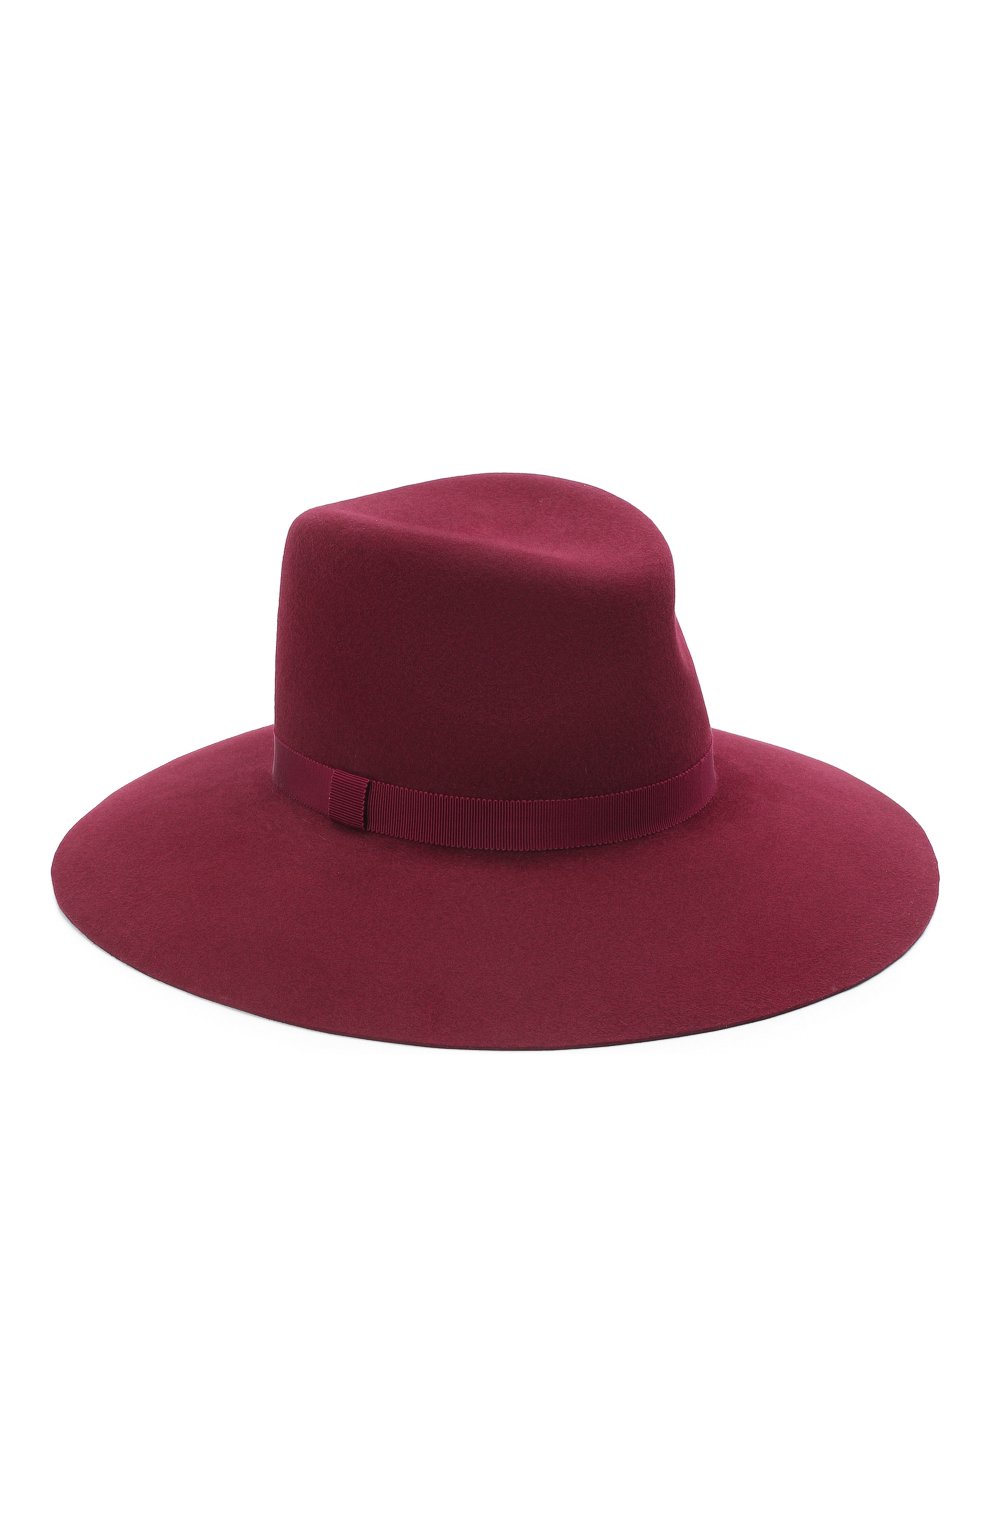 Женская шляпа fedora COCOSHNICK HEADDRESS бордового цвета, арт. fedoranews-10 | Фото 1 (Материал: Текстиль, Хлопок)